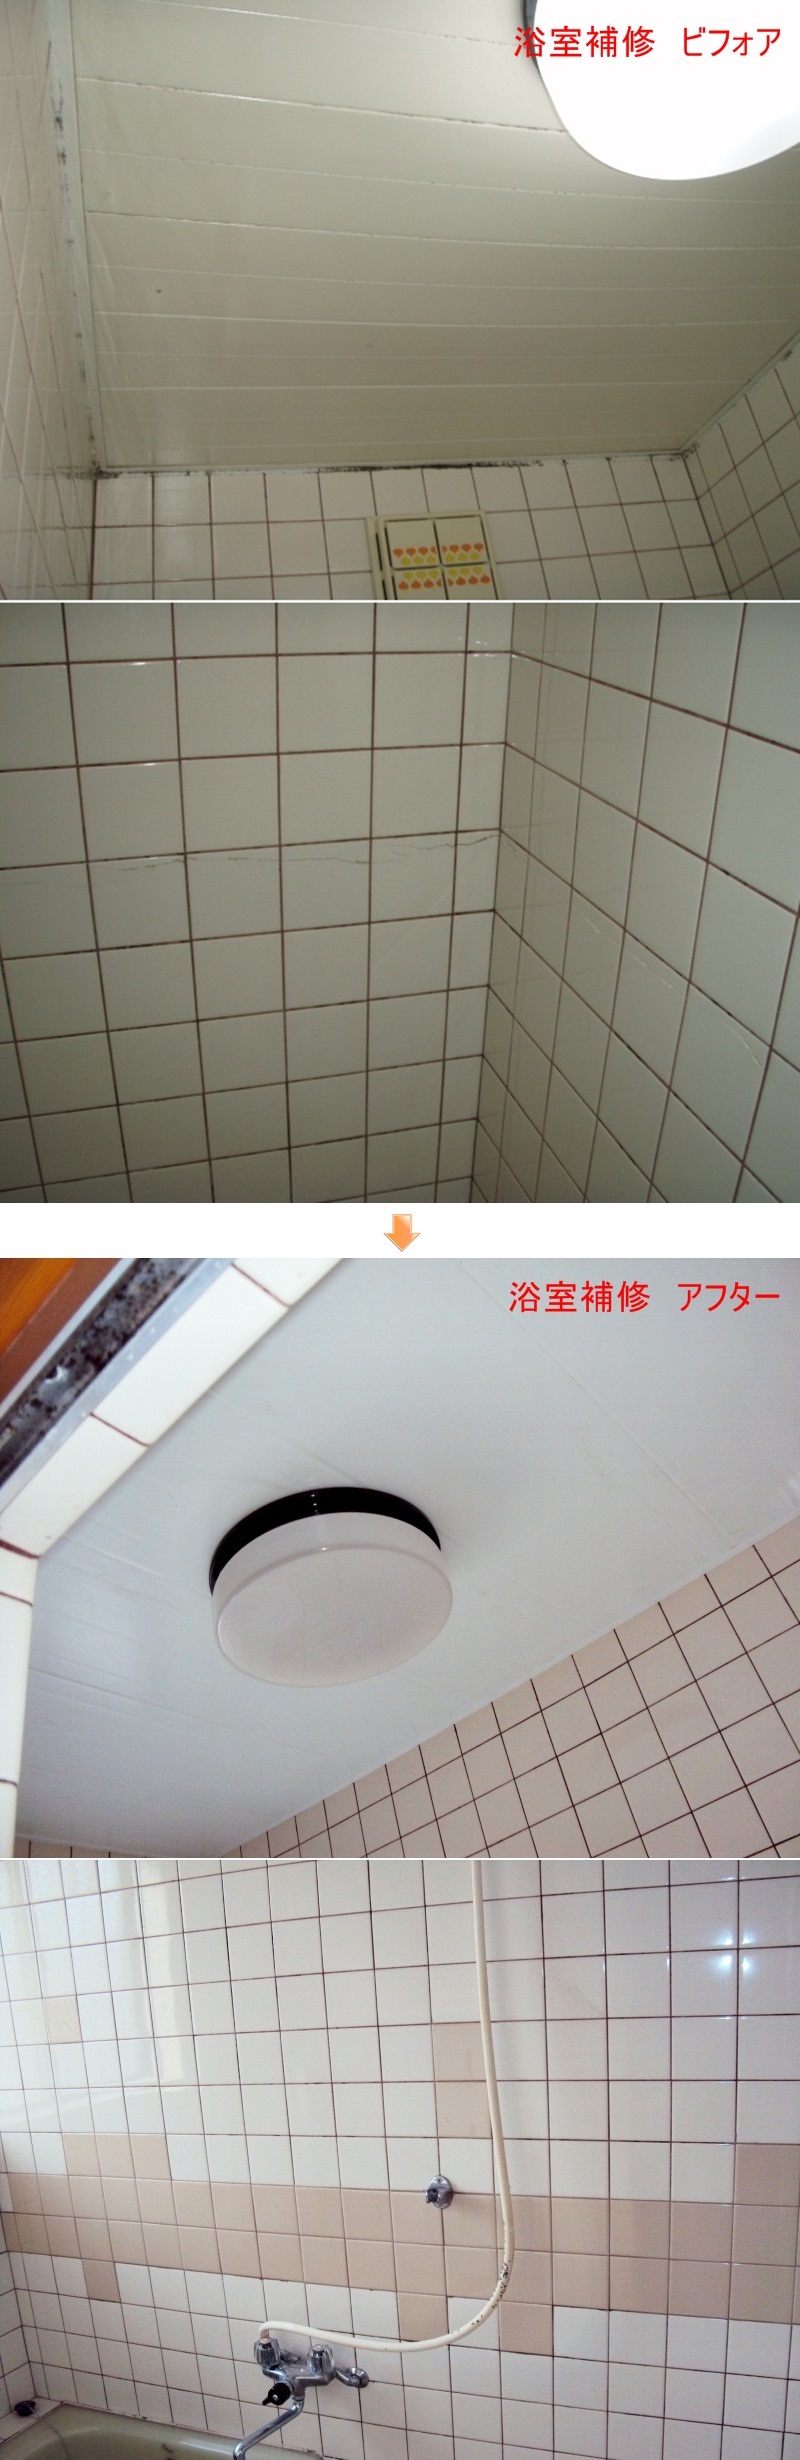 浴室の天井のパネルが垂れ下がっていたので貼り替えをし、剥がれていたタイルを補修しました。天井は、「バスリブ」という製品で浴室用天井仕上材を使用しています。